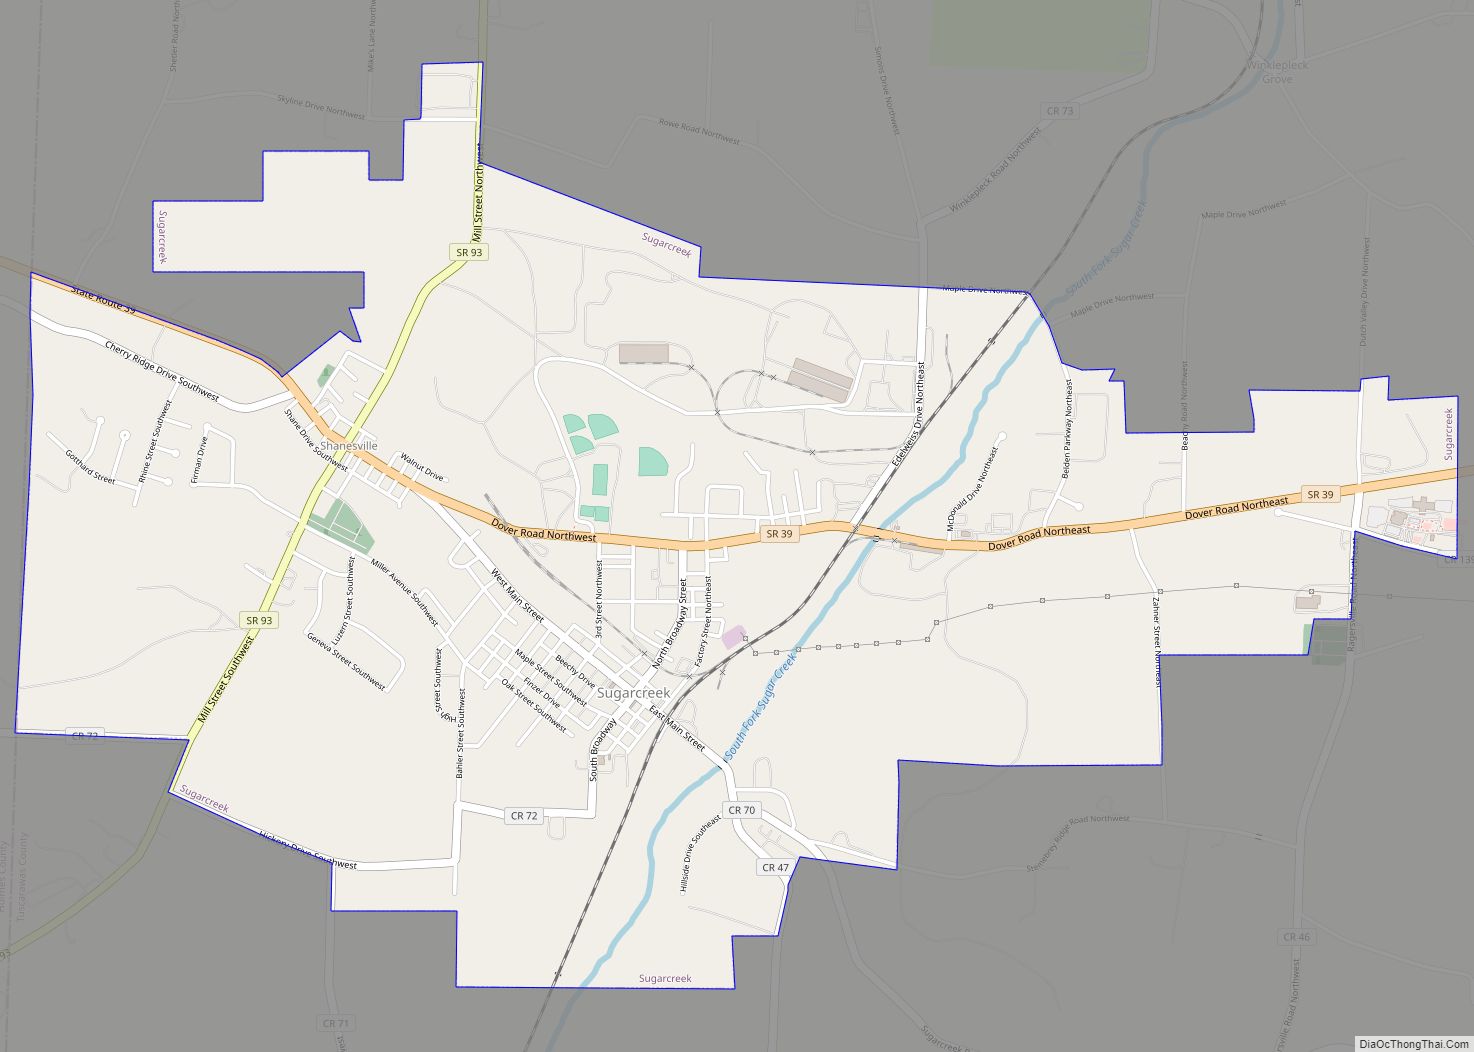 Map of Sugarcreek village